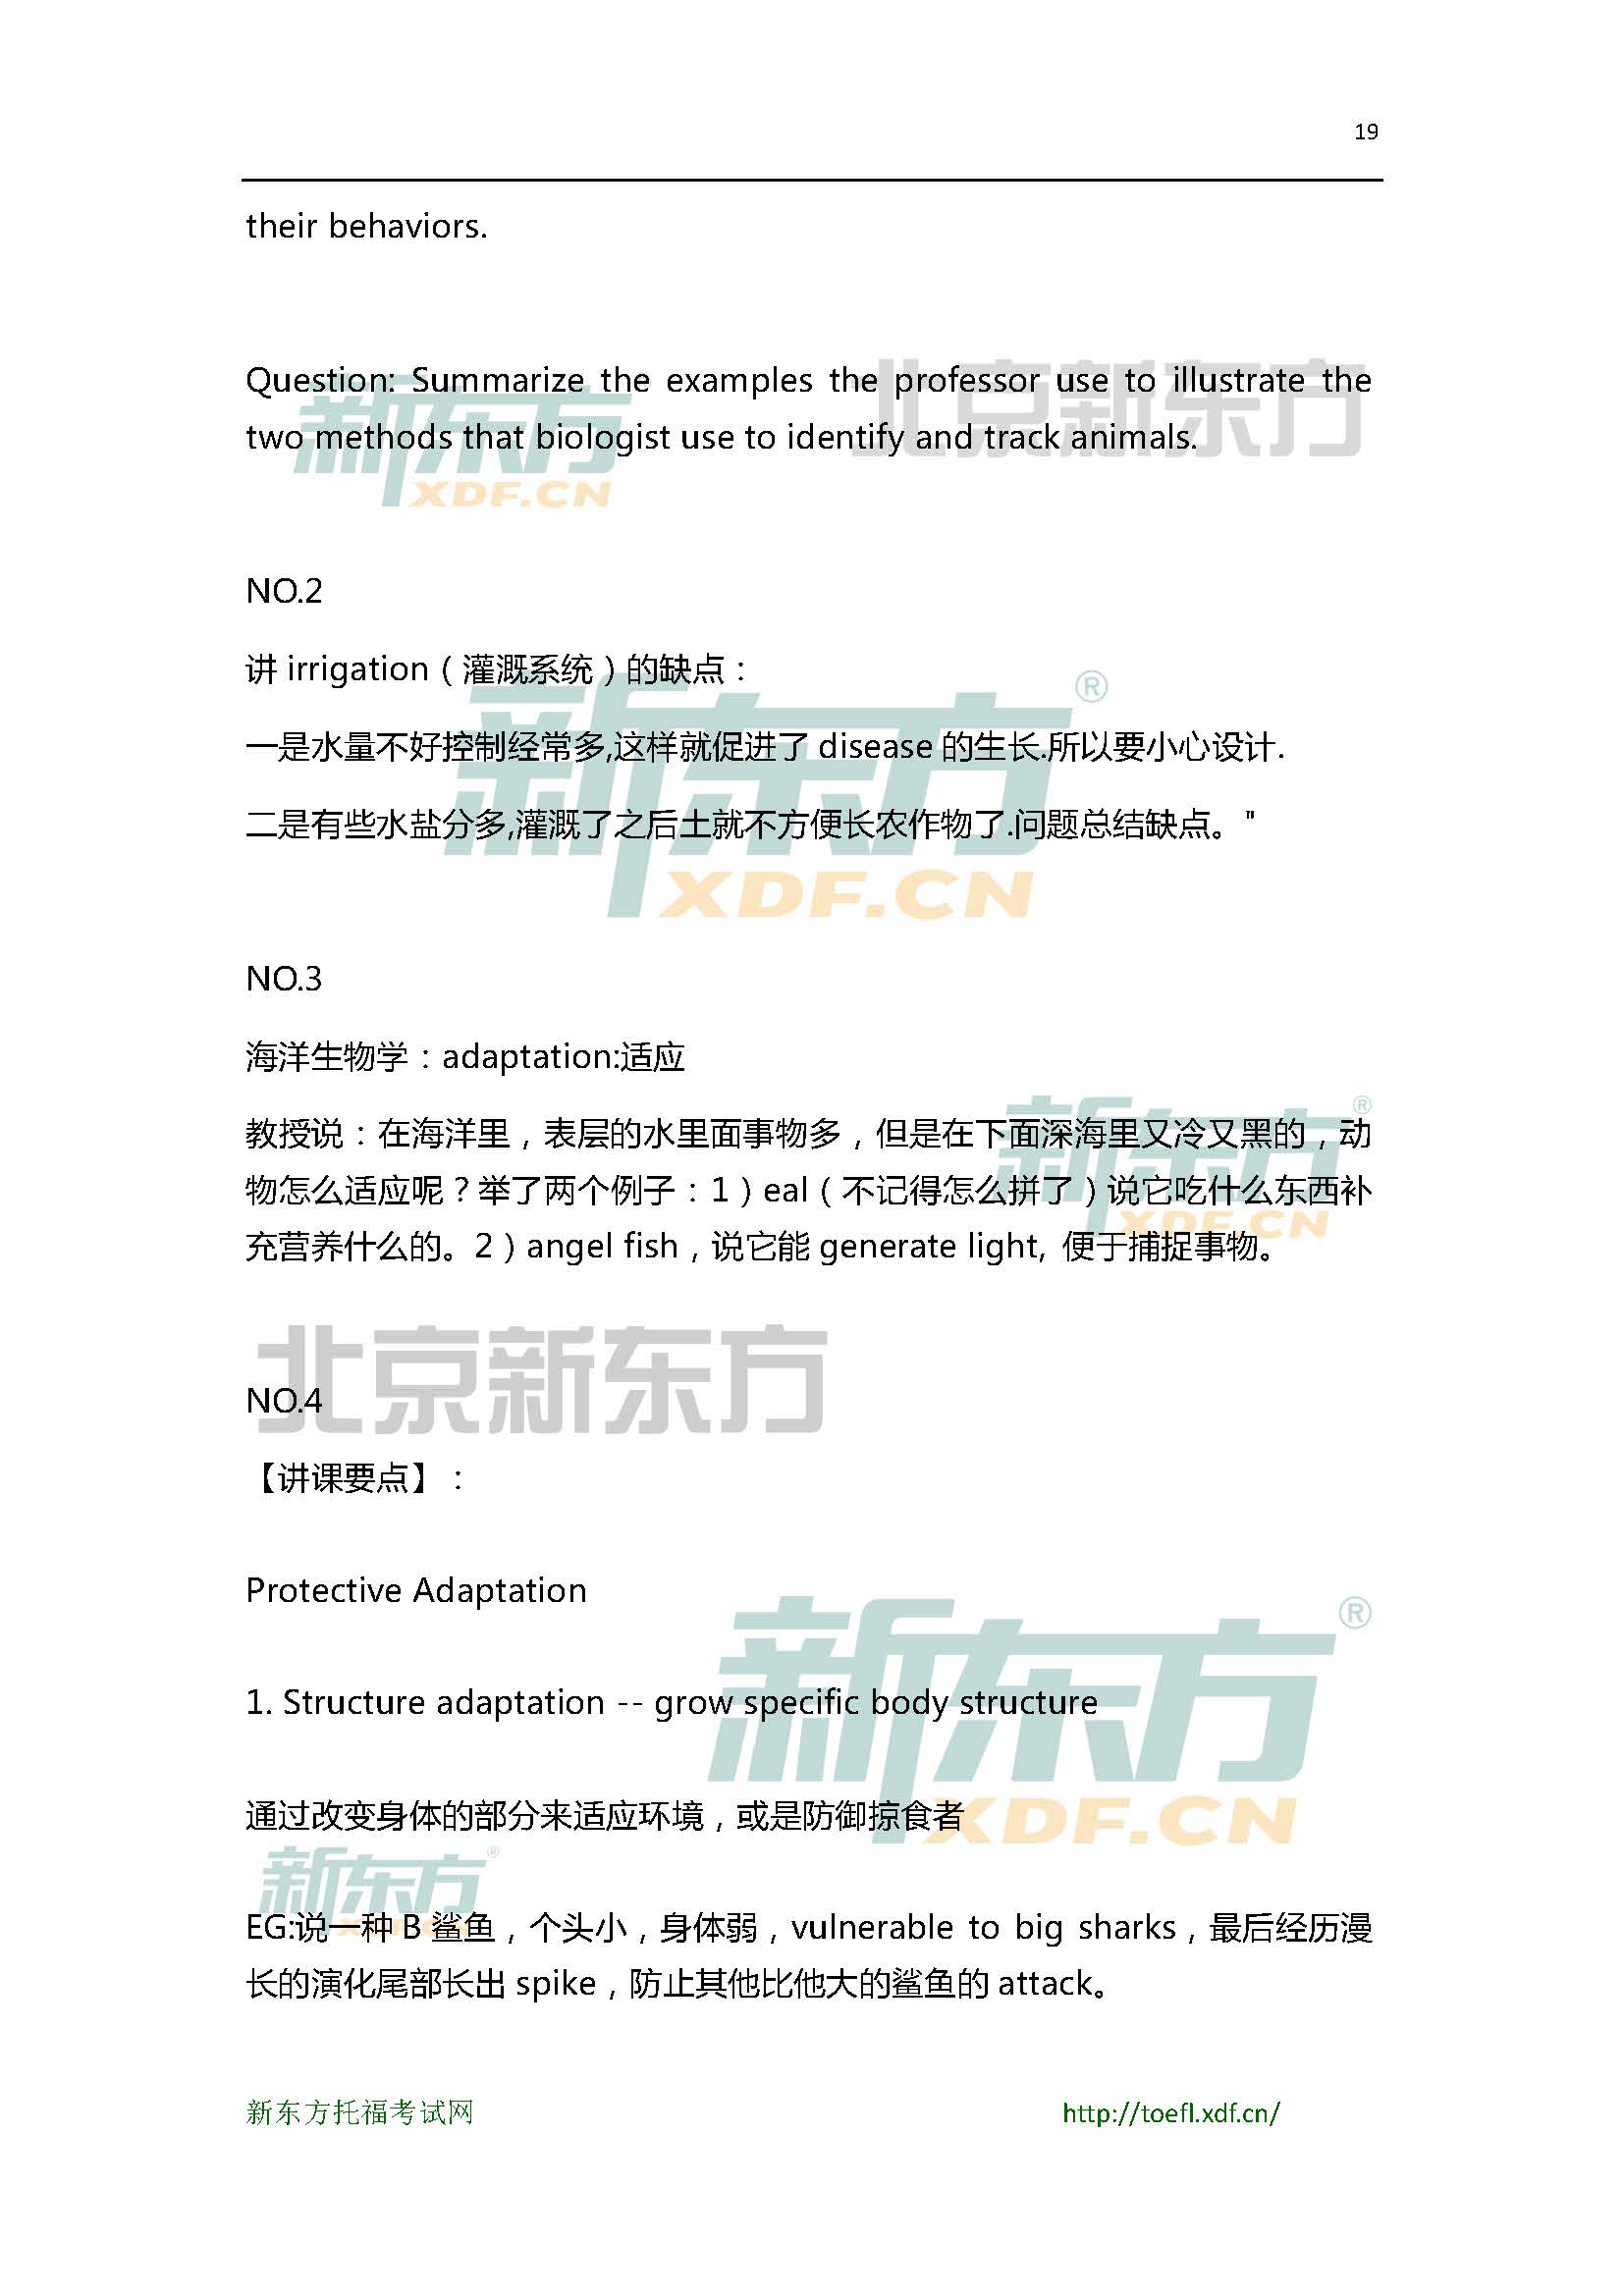 2015年6月13/14日托福口语小范围预测(12套题)